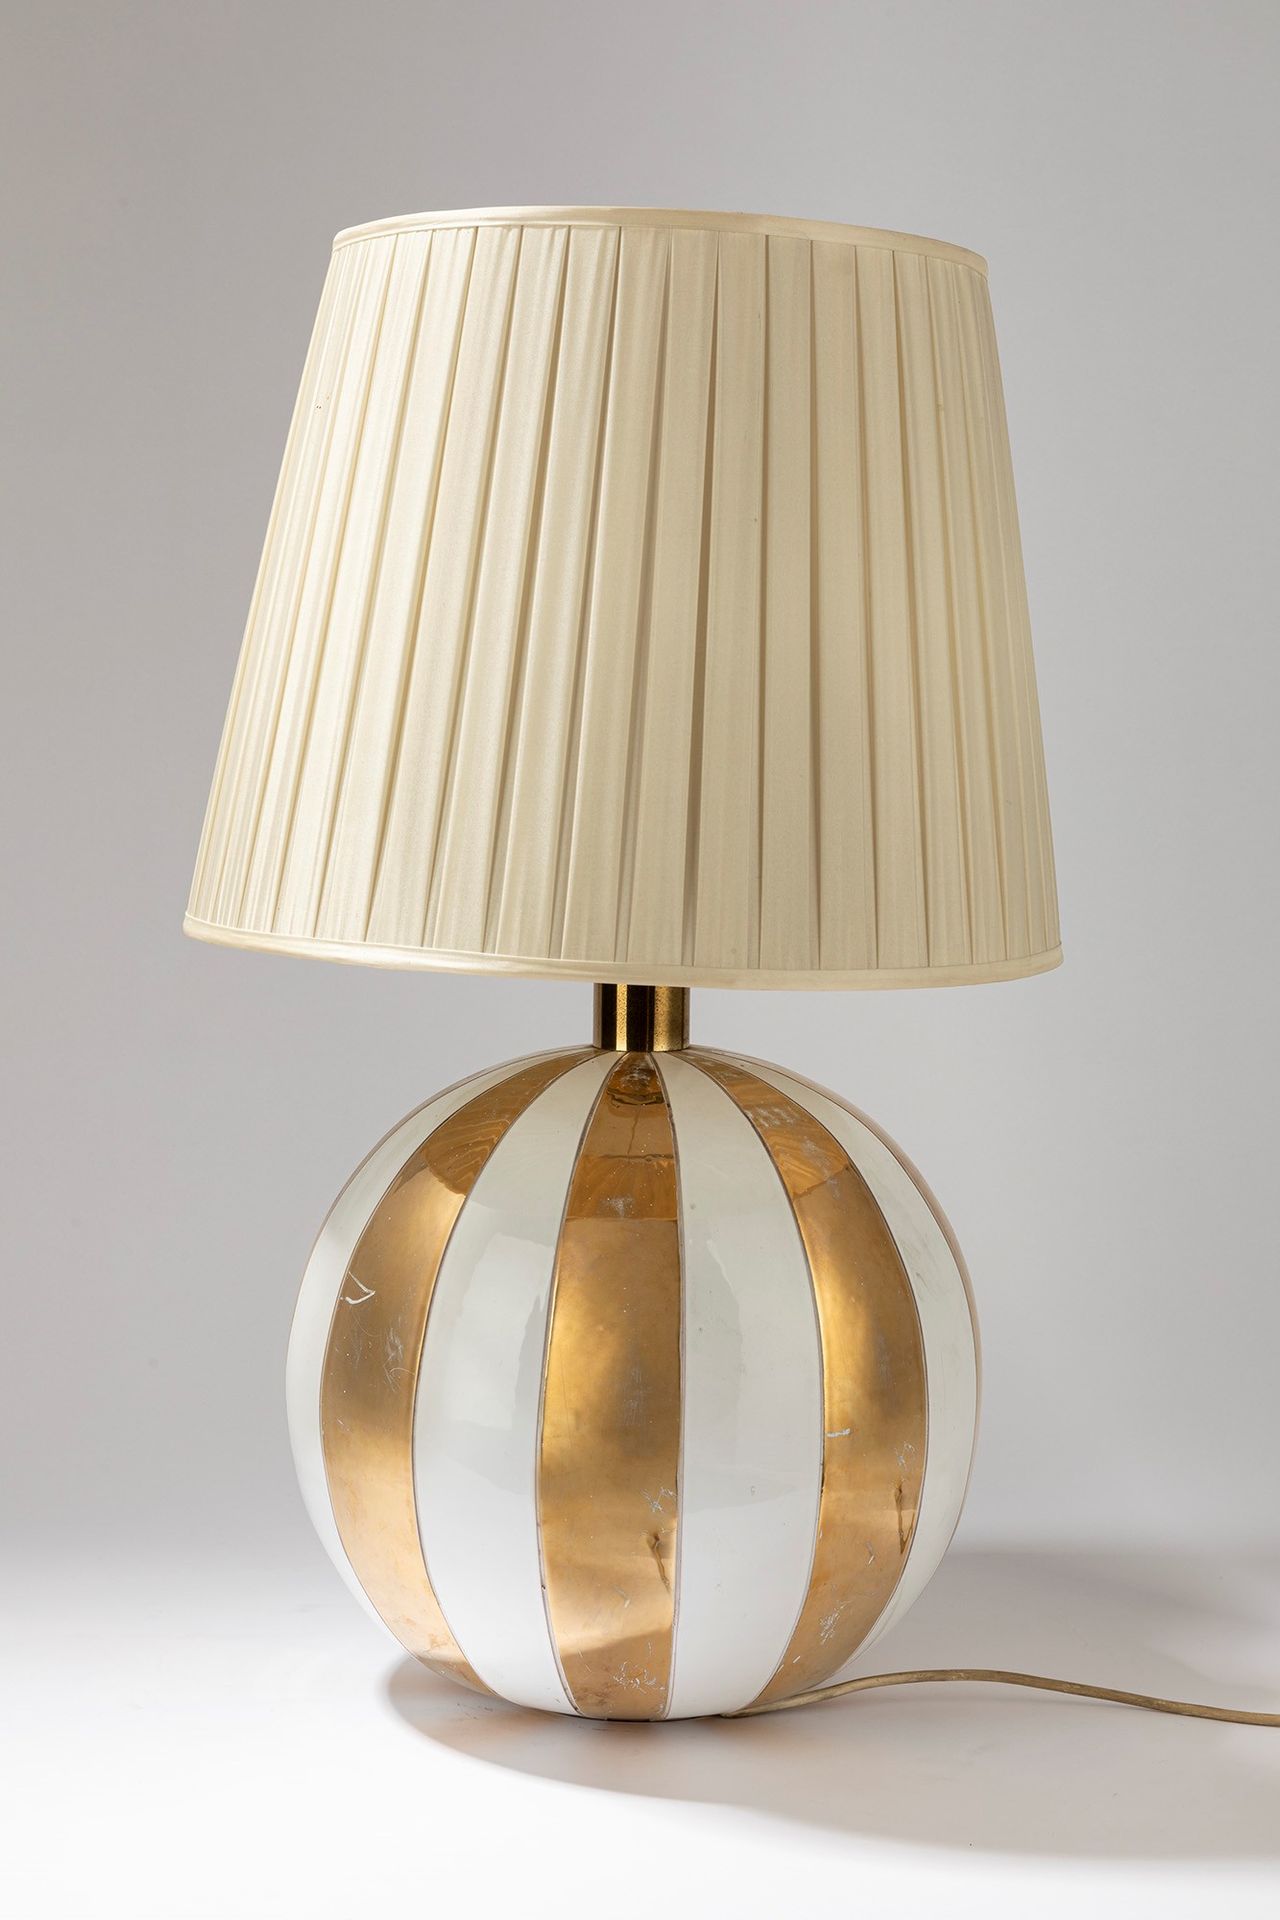 ITALIAN MANUFACTURE Lámpara de mesa, época de los años 60

H cm 80
en ceramcica &hellip;